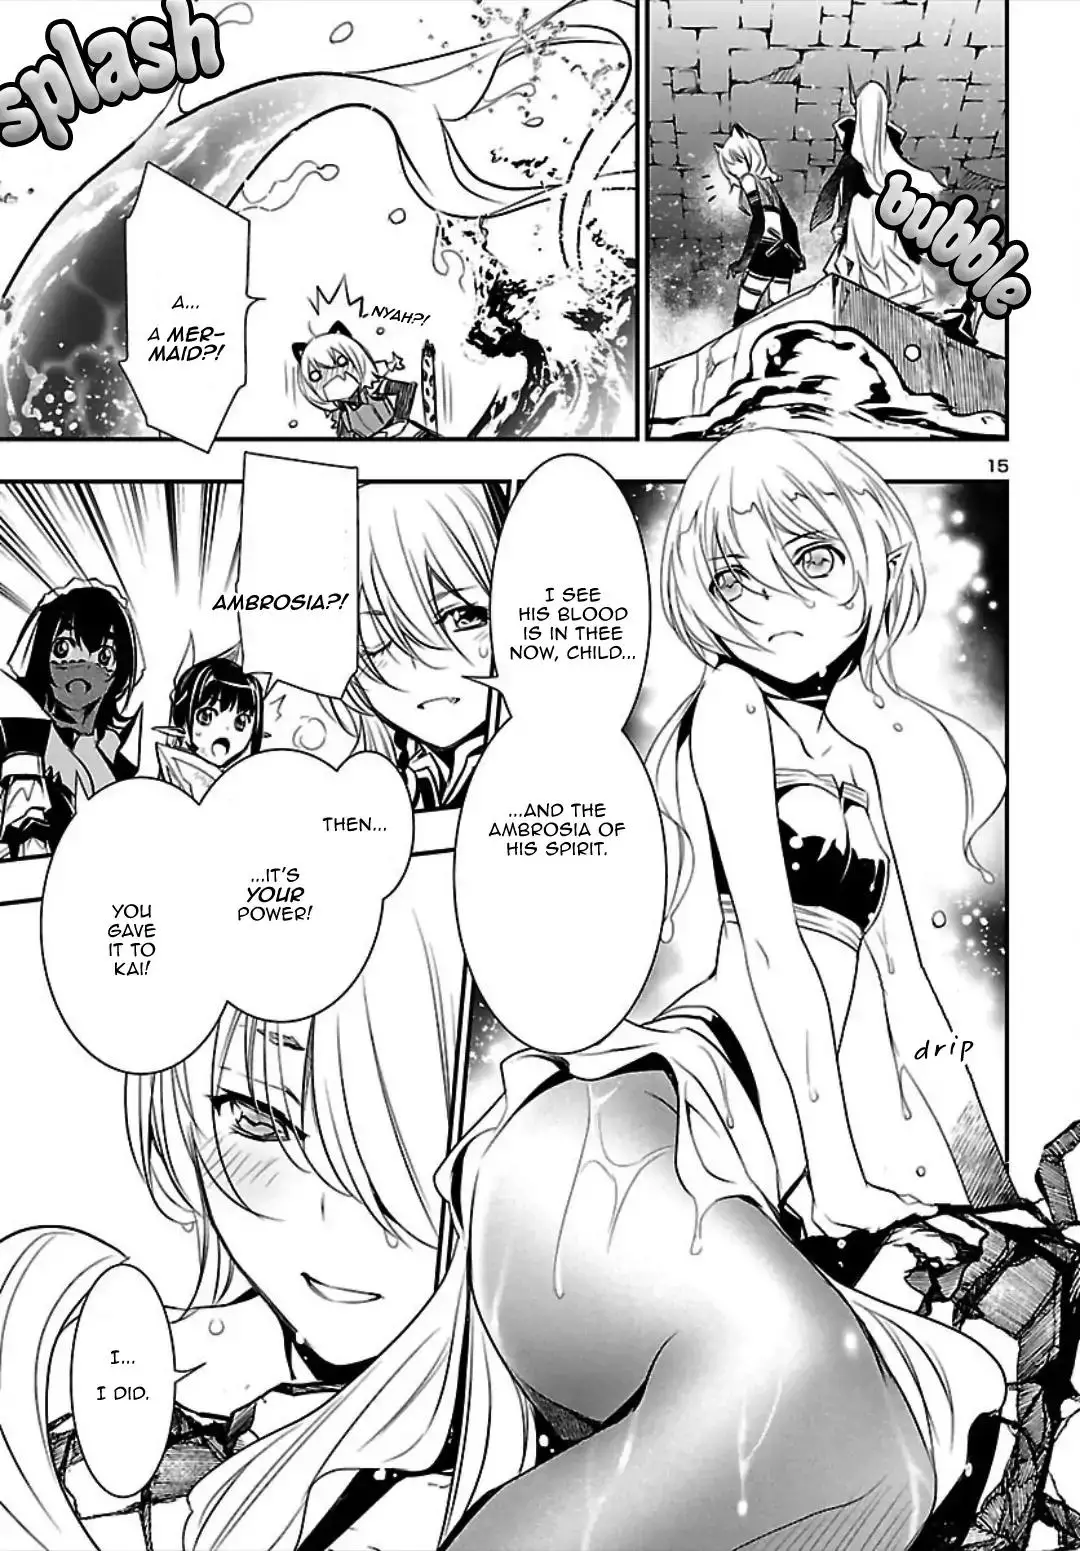 Shinju no Nectar - 20 page 14